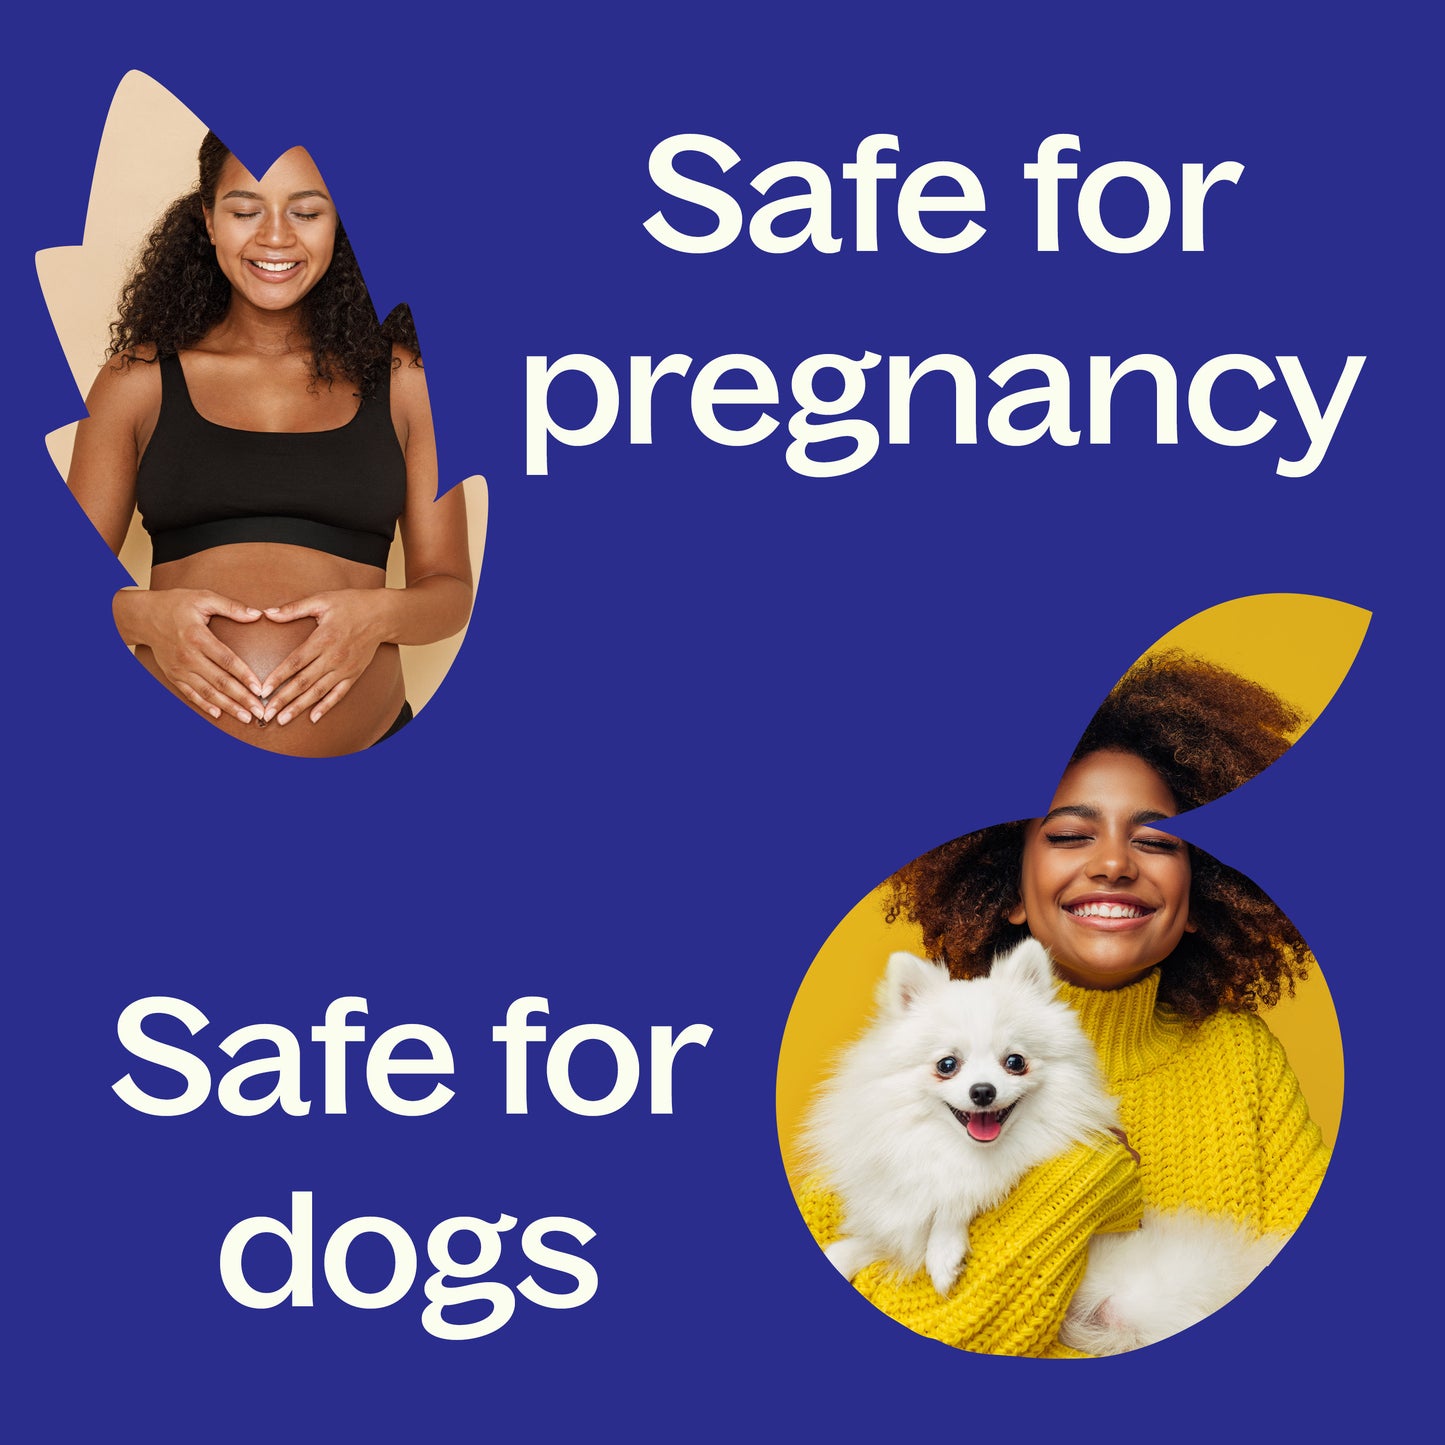 Safe for pregnancy. Safe for dogs.